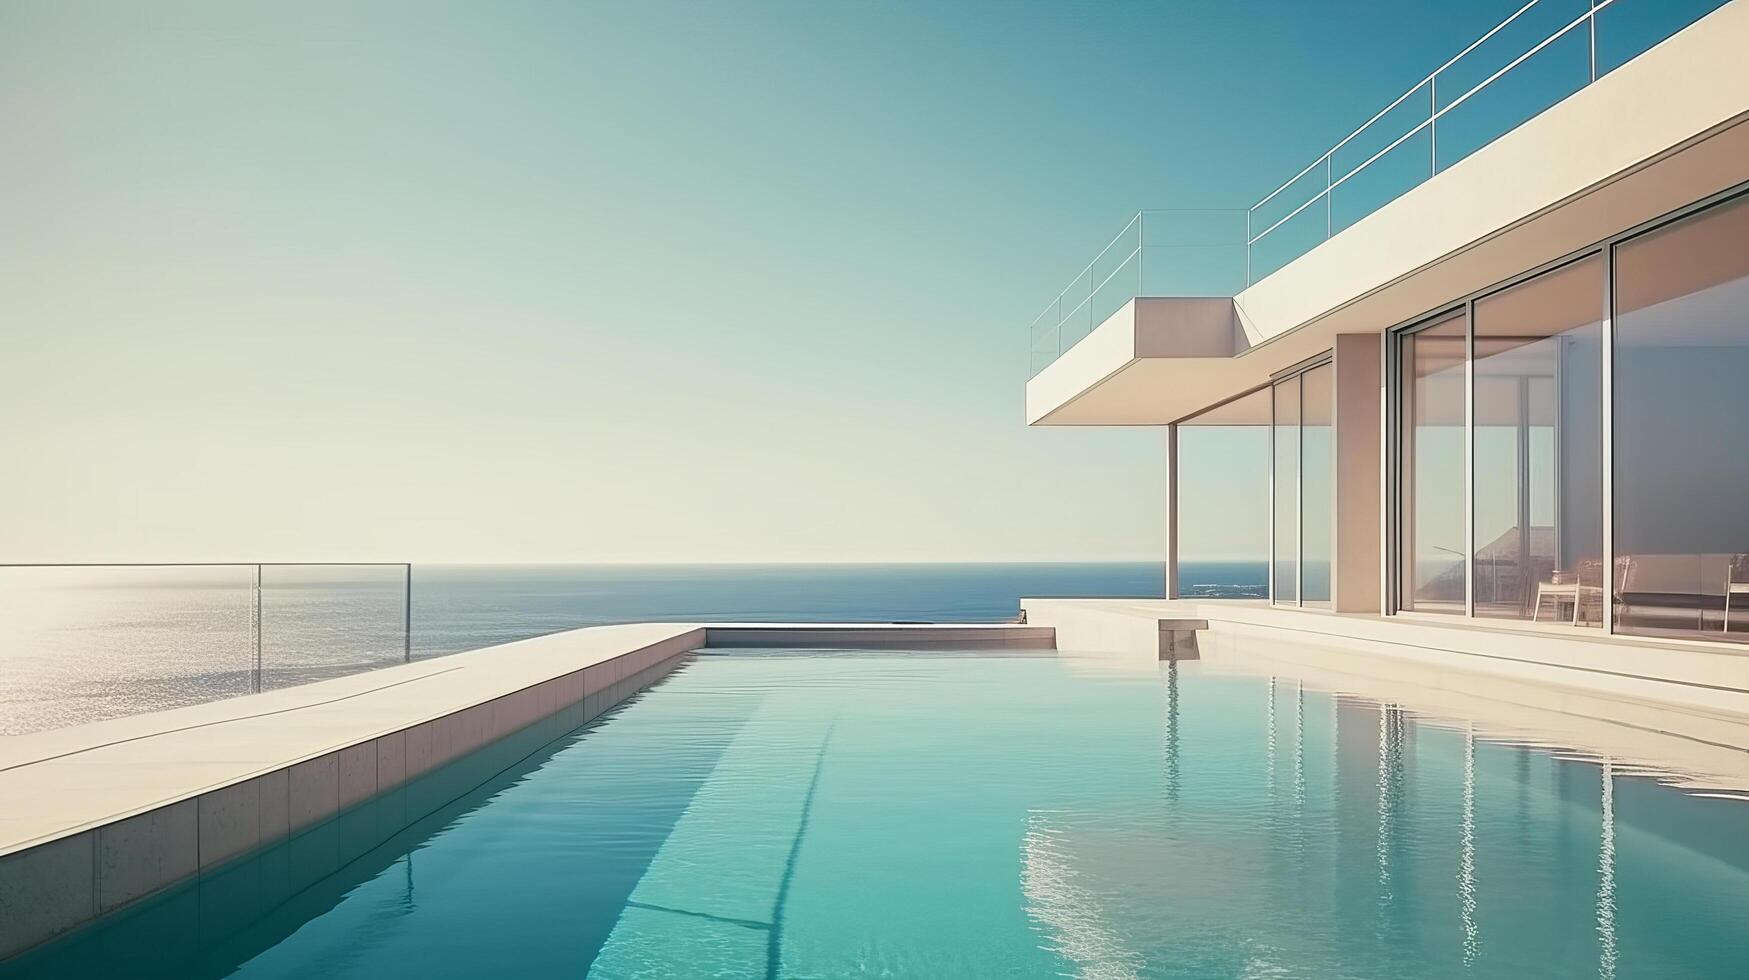 Luxury modern villa with pool. Illustration photo